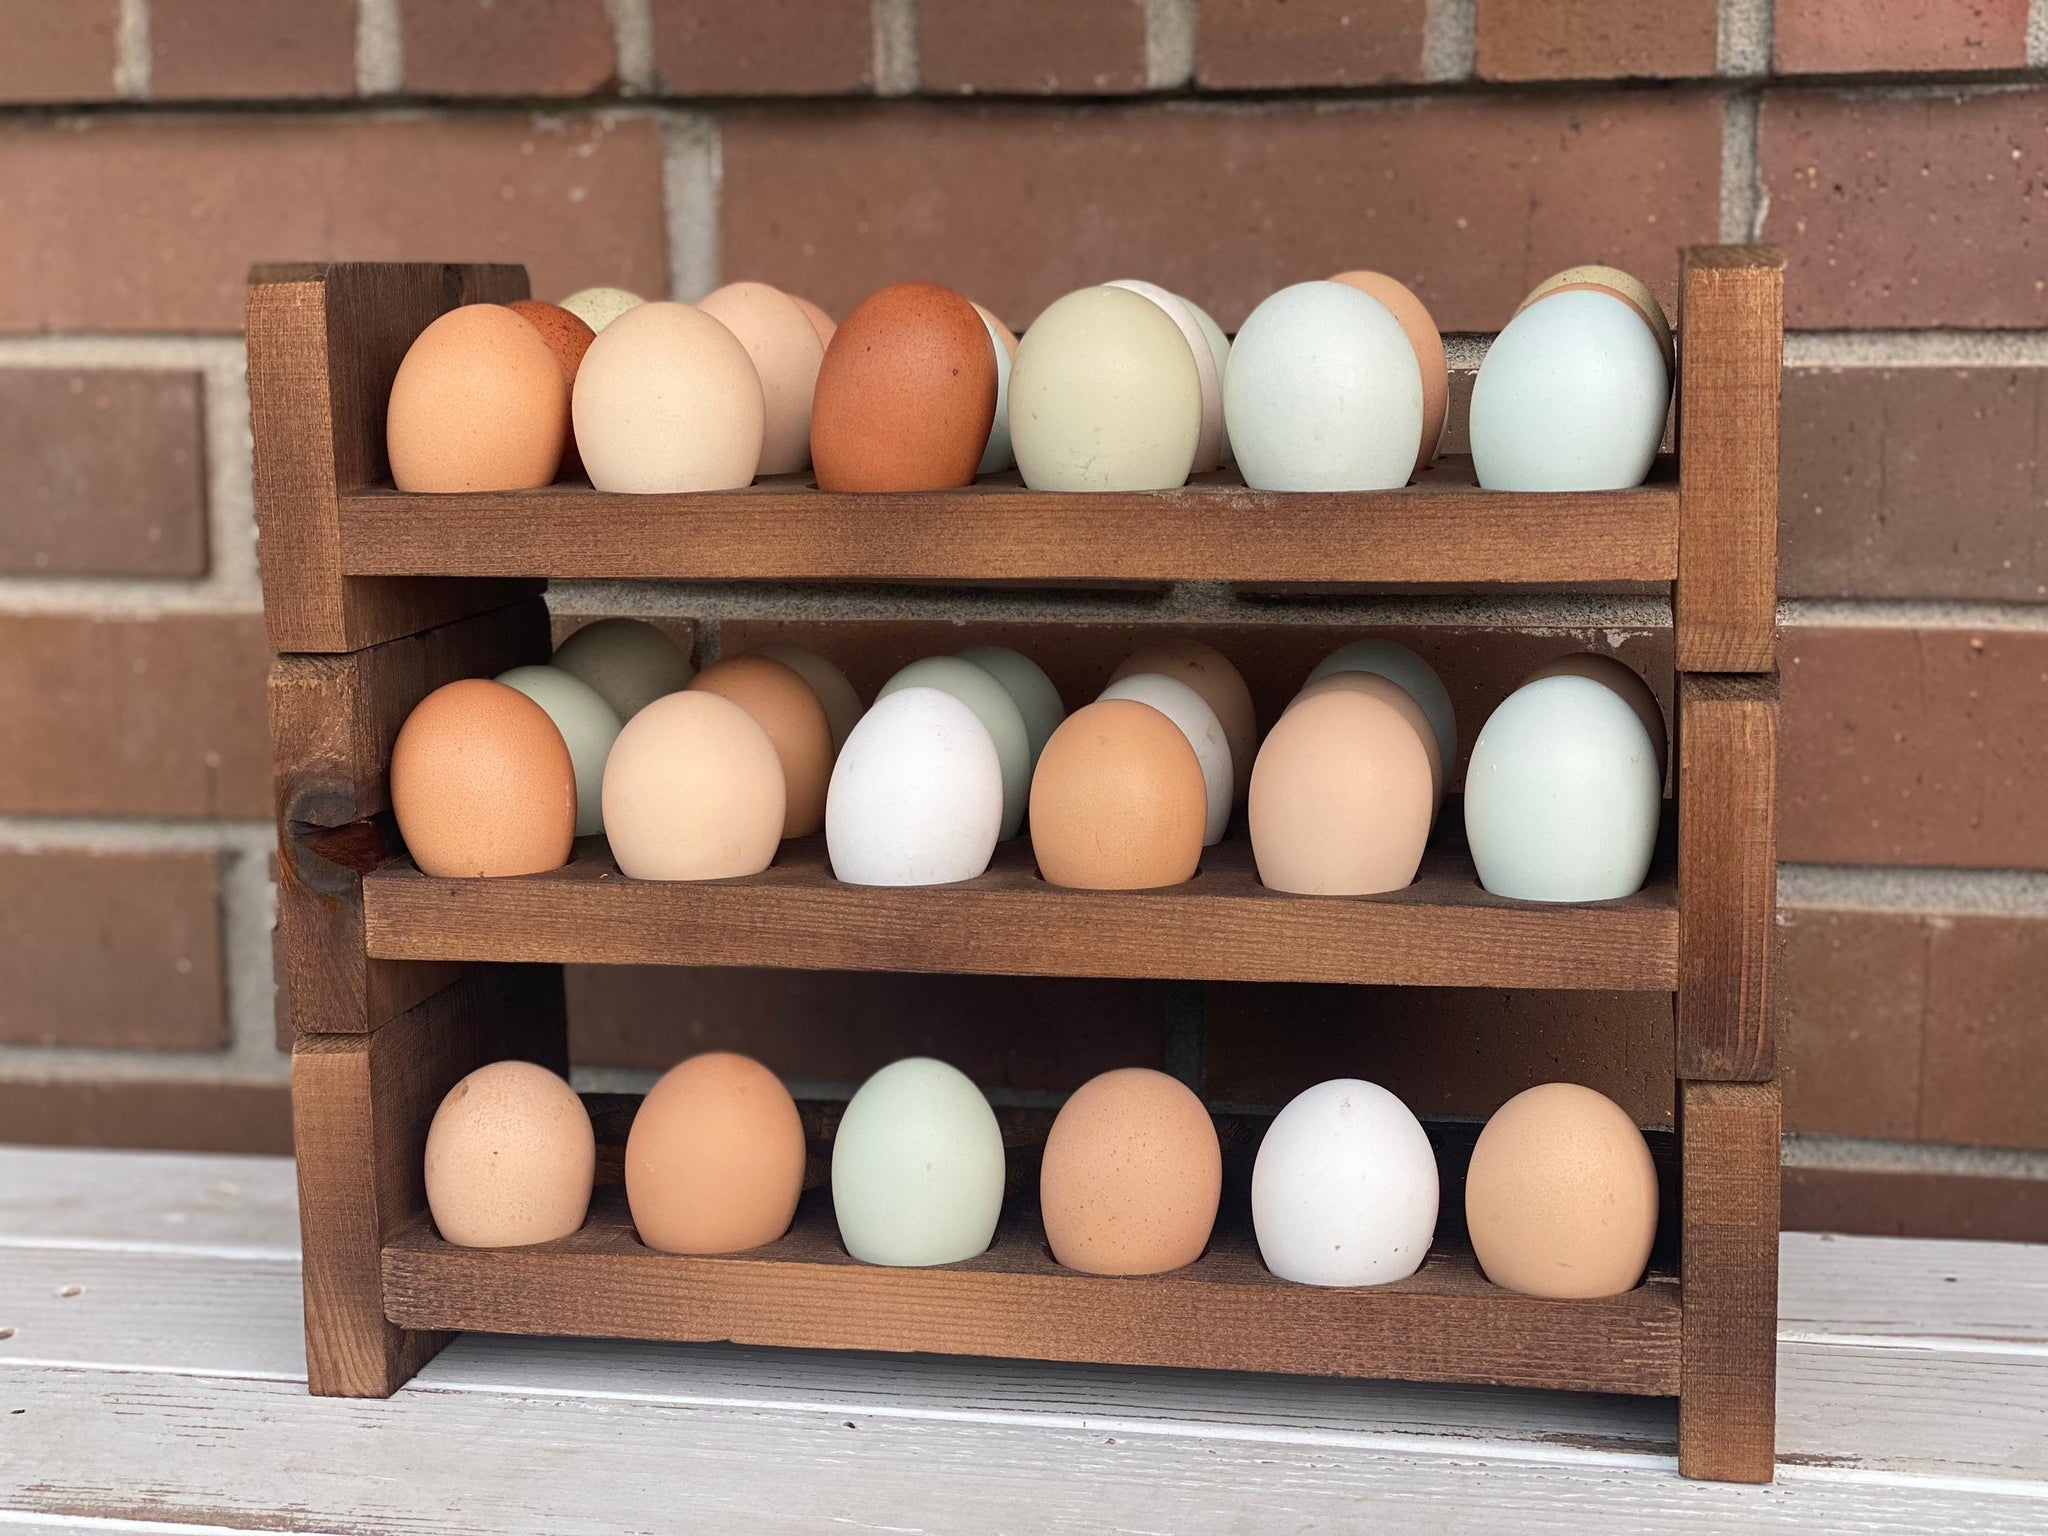 Egg Holder Tray- Countertop Stackable Egg Rack For Fresh Eggs